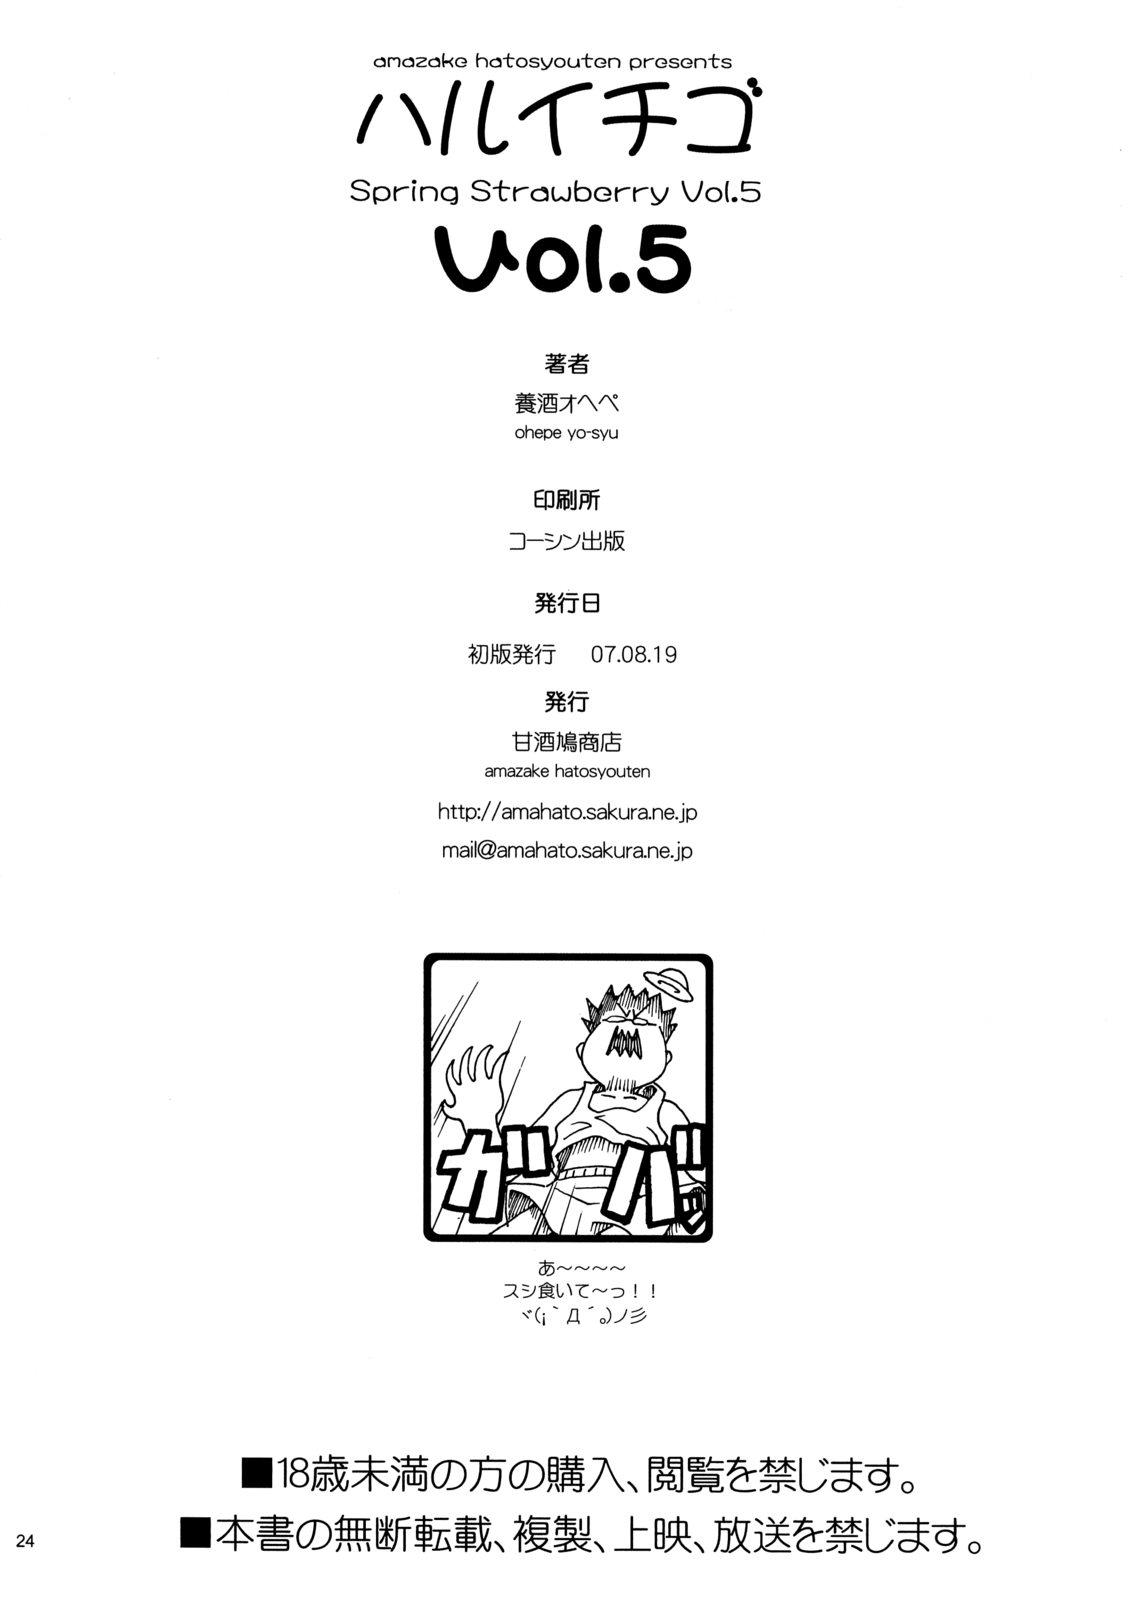 Haru Ichigo Vol. 5 - Spring Strawberry Vol. 5 20